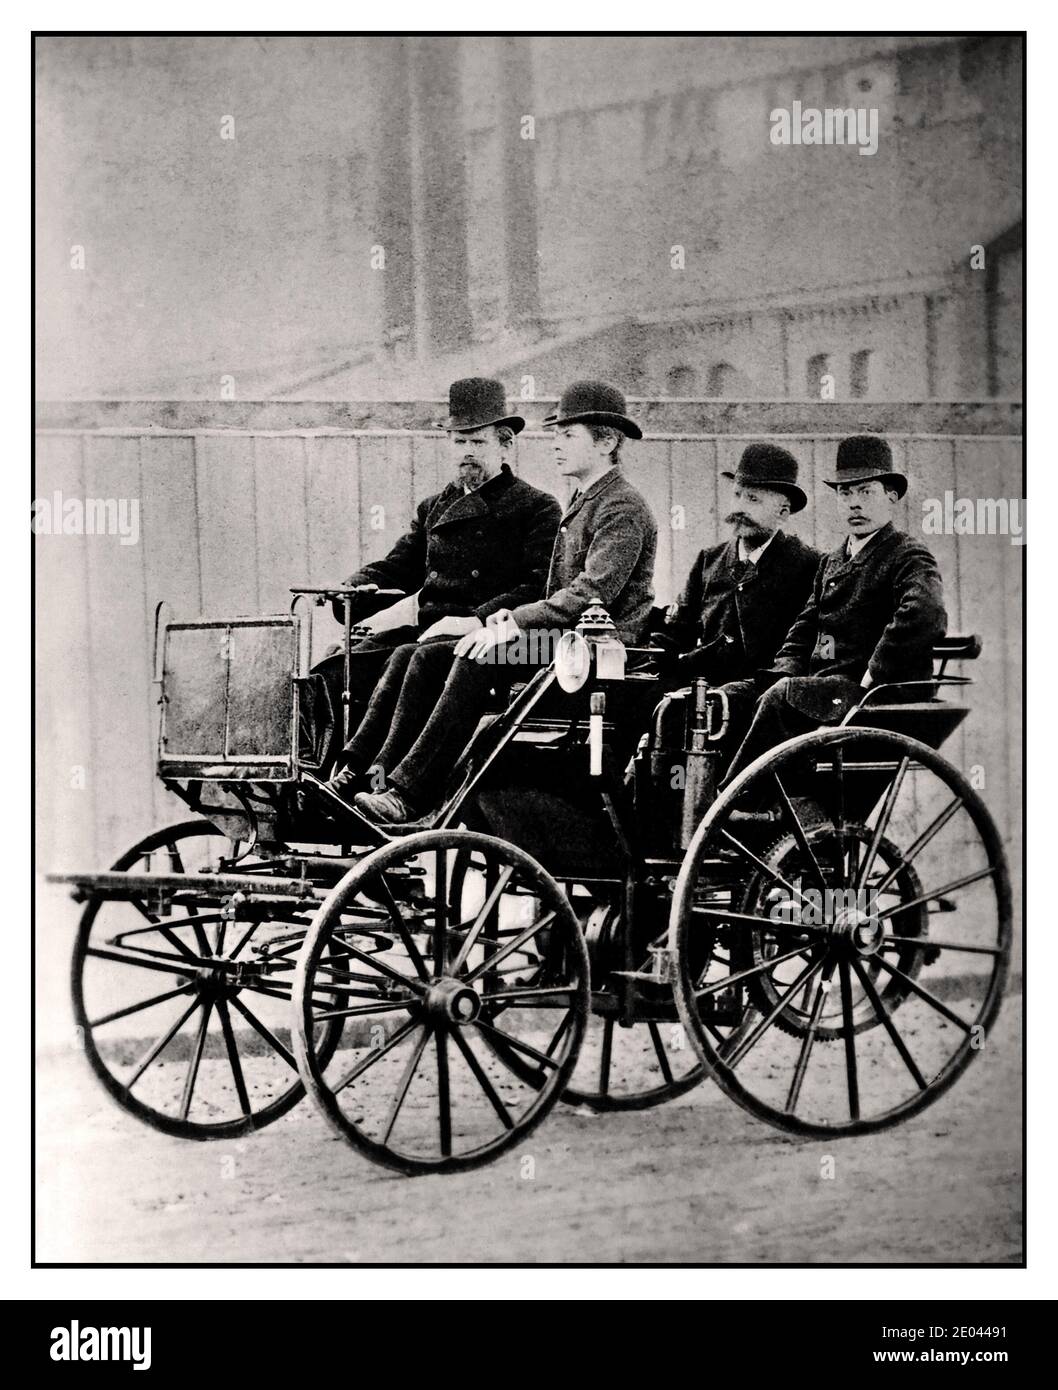 Archivio del 1890 DAIMLER MAYBACH trasporto carrozza d'epoca i costruttori tedeschi di automobili Wilhelm Maybach e Paul Daimler nella prima macchina Daimler a quattro ruote. 1895 carrozza motorizzata Daimler, agosto Wilhelm Maybach Foto Stock